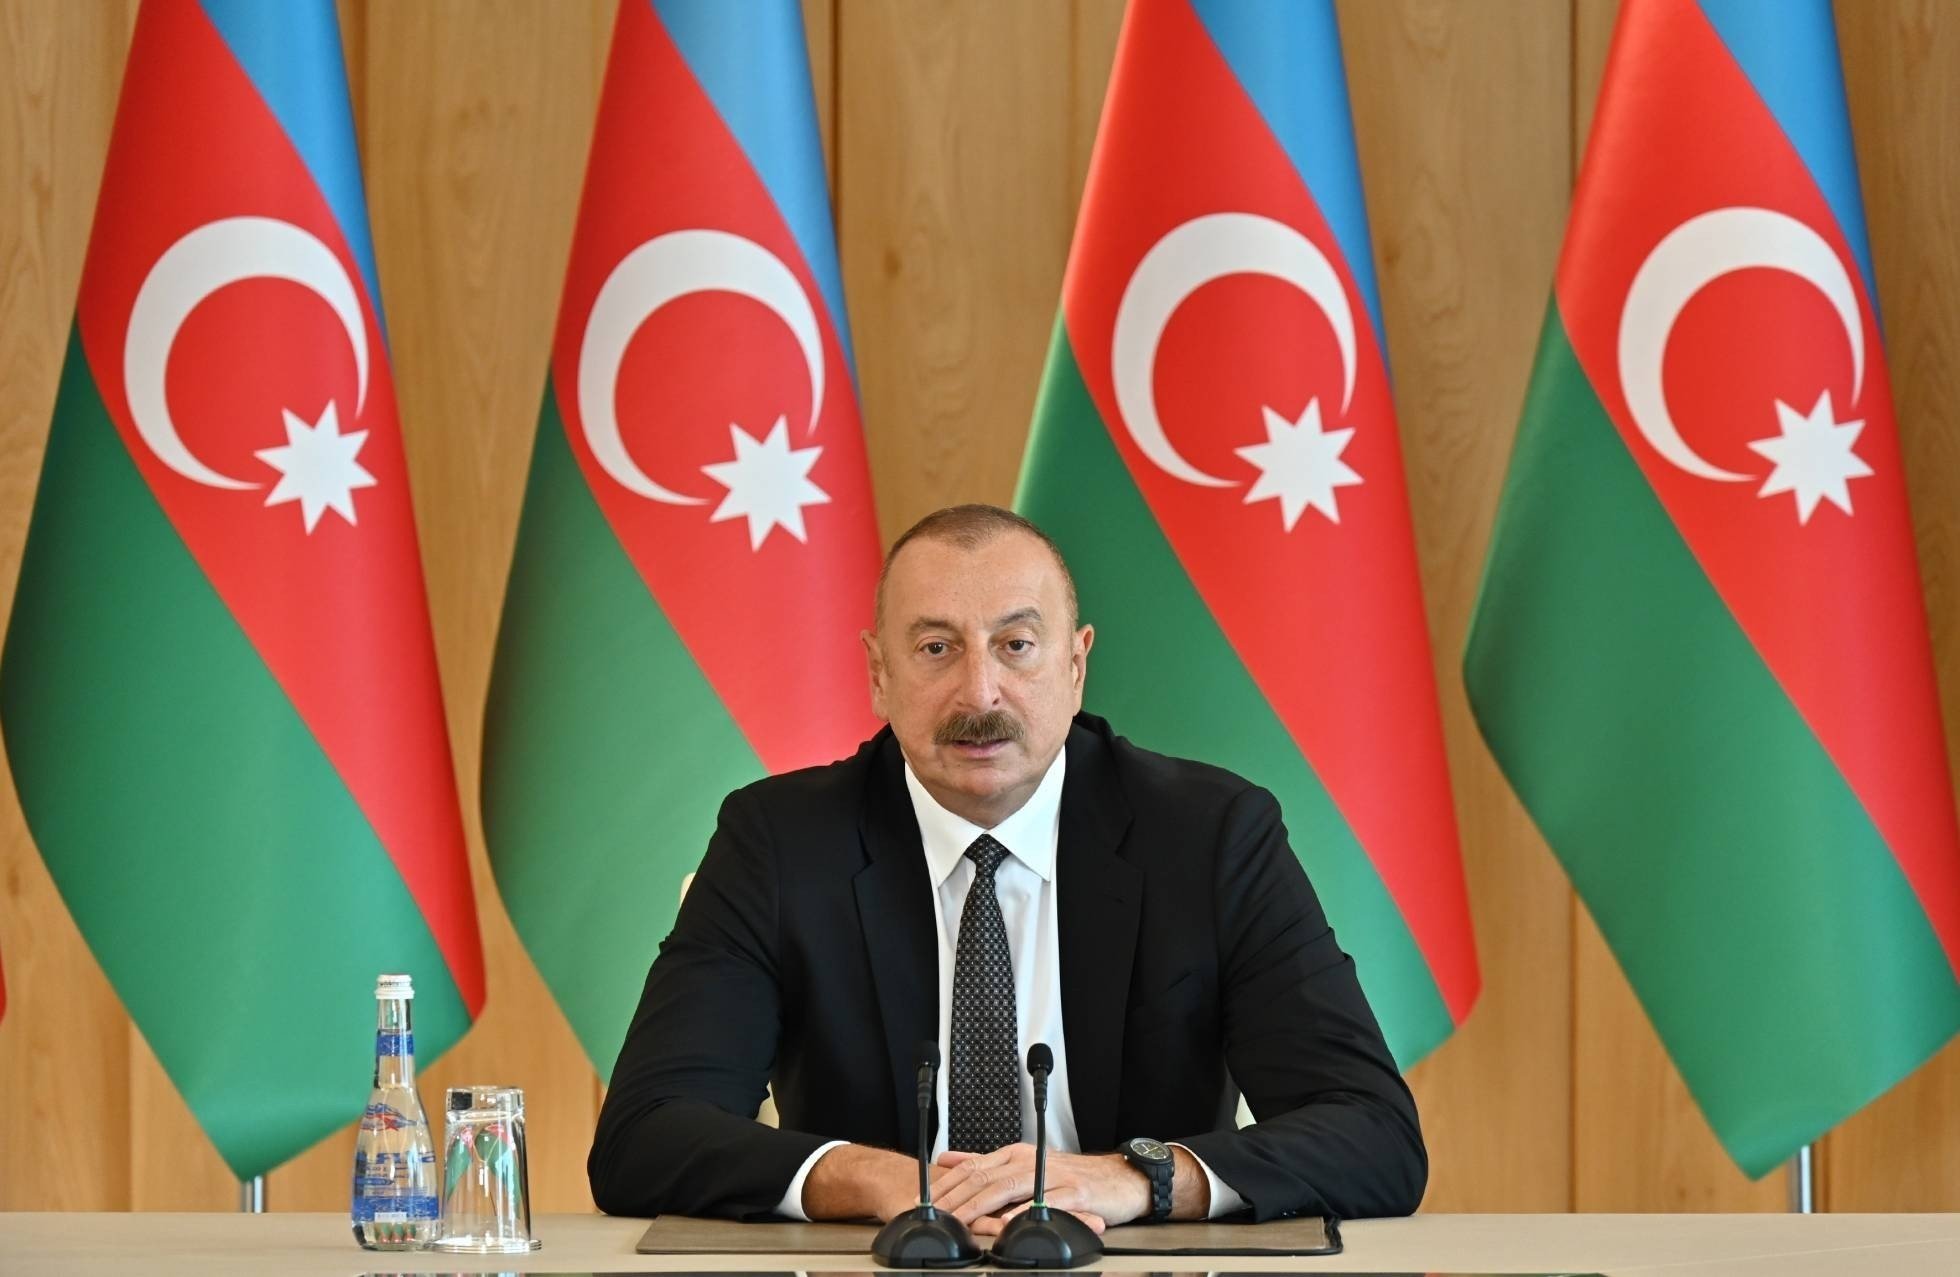 كفانا حروباً .. رئيس أذربيجان متفائل بتوقيع اتفاق سلام مع أرمينيا